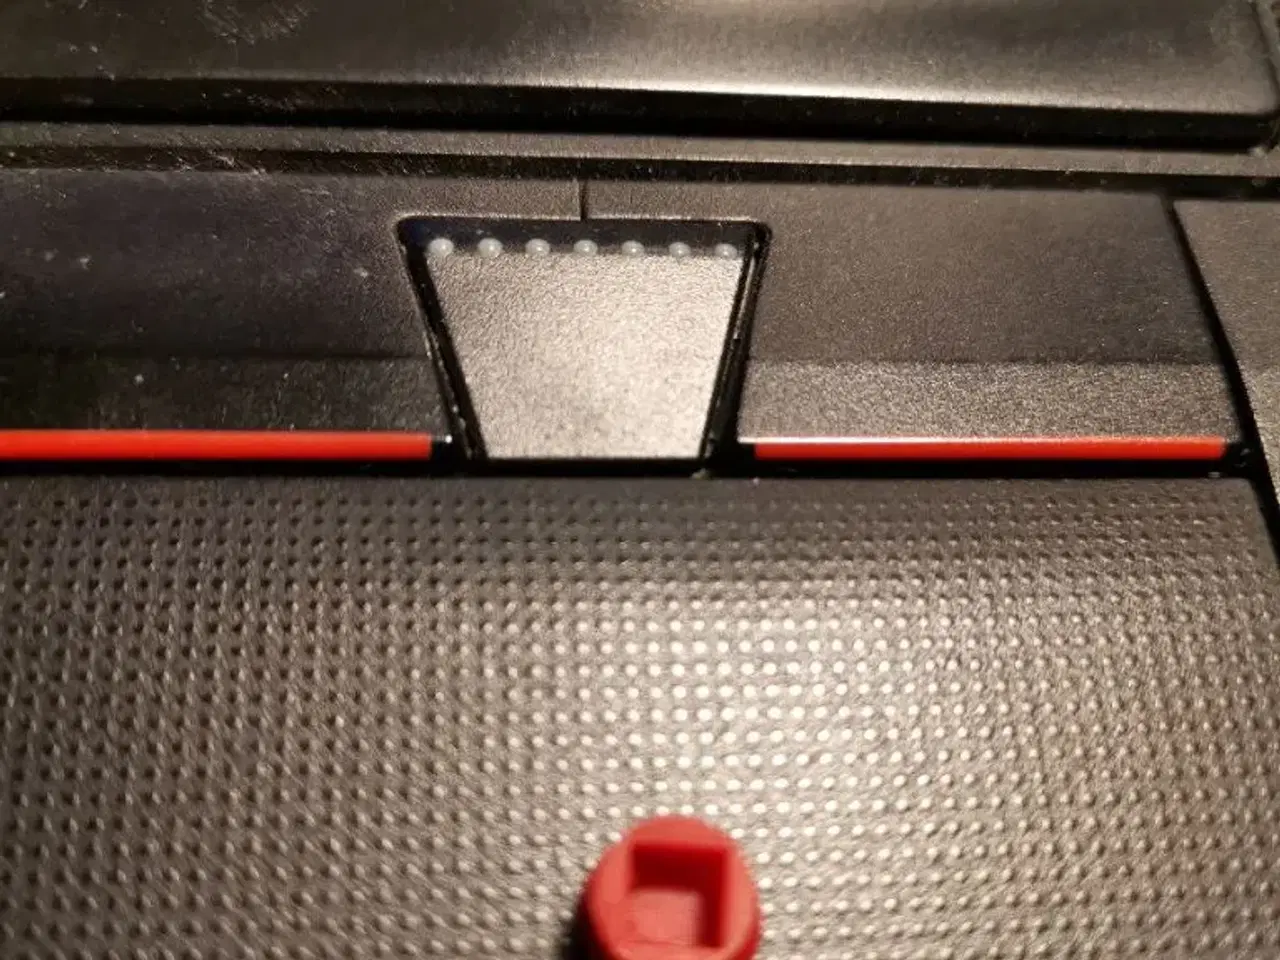 Billede 2 - Rød Lenovo mus i tastaturet.